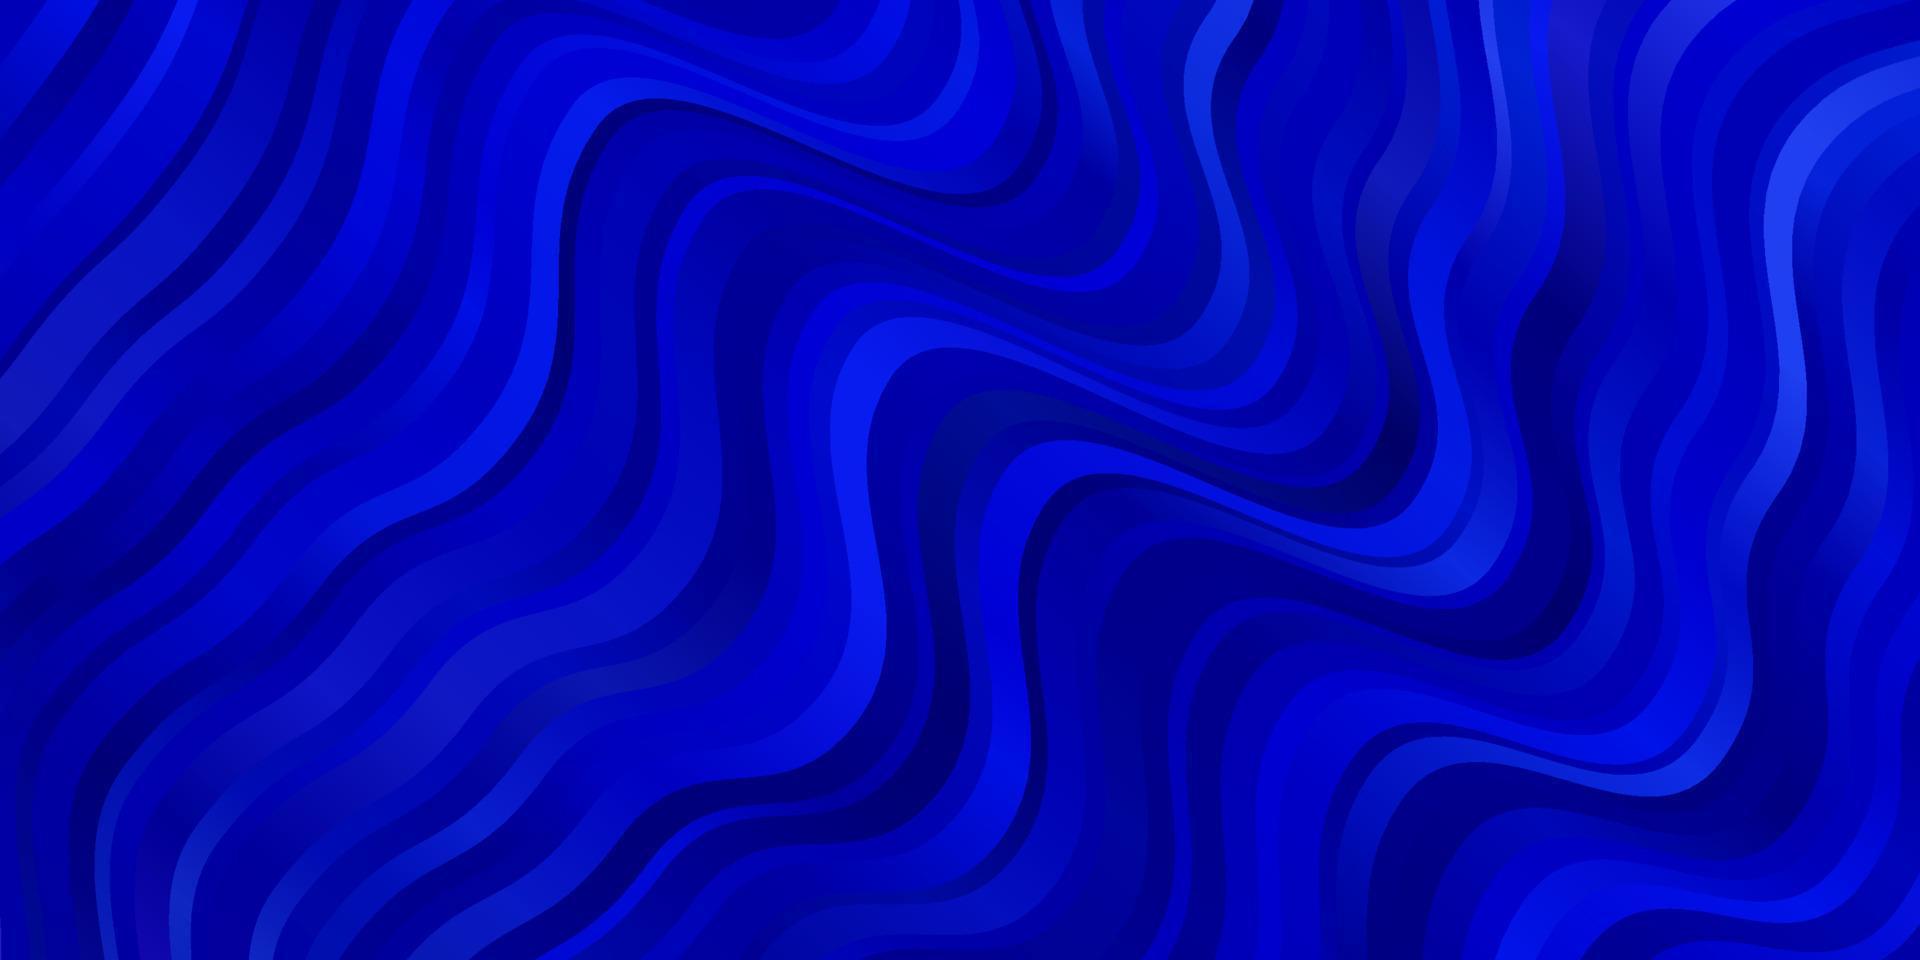 toile de fond de vecteur bleu clair avec des courbes.